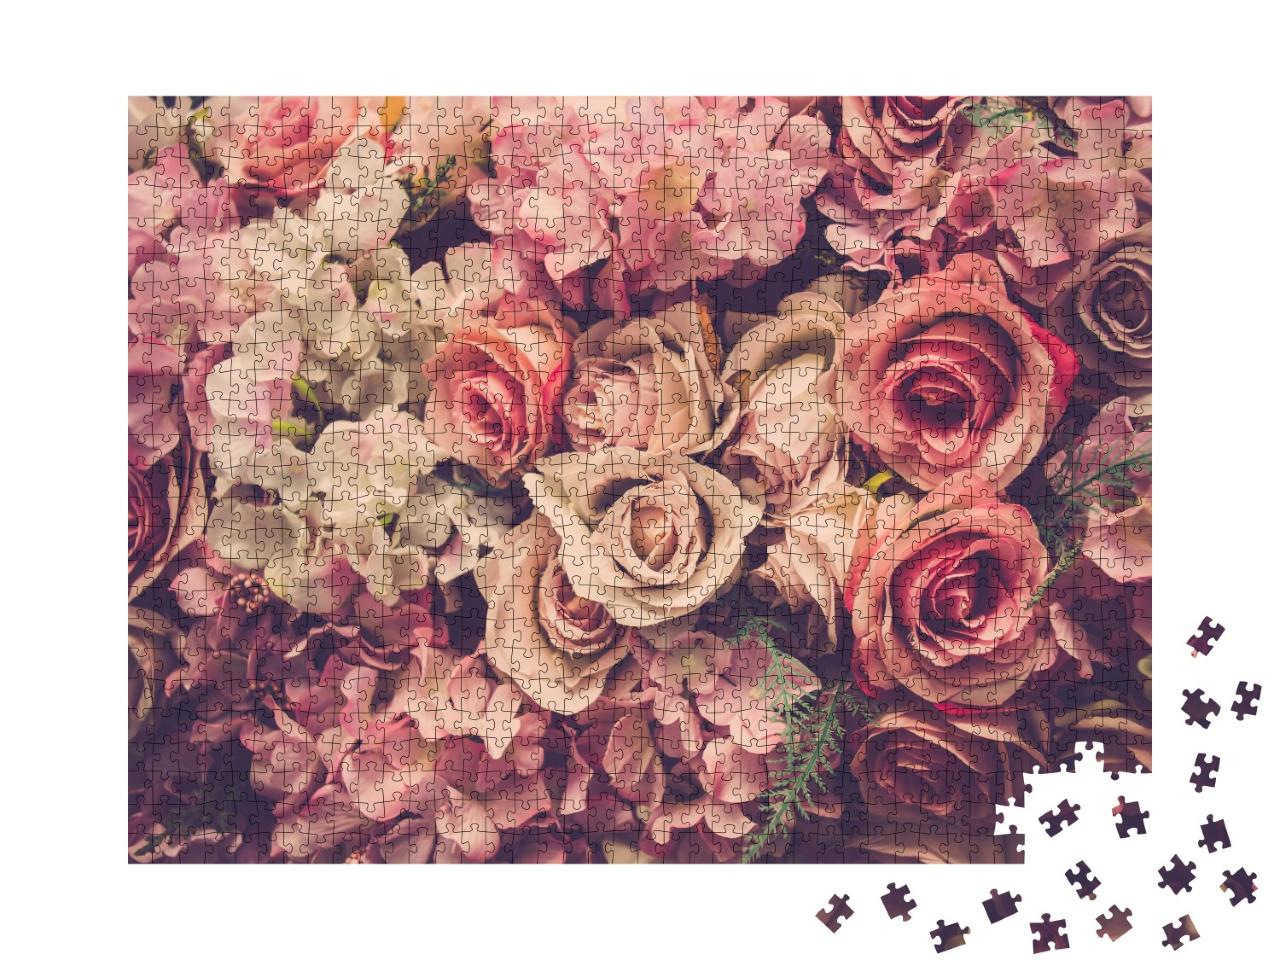 Puzzle 1000 Teile „Rosa Rosen“